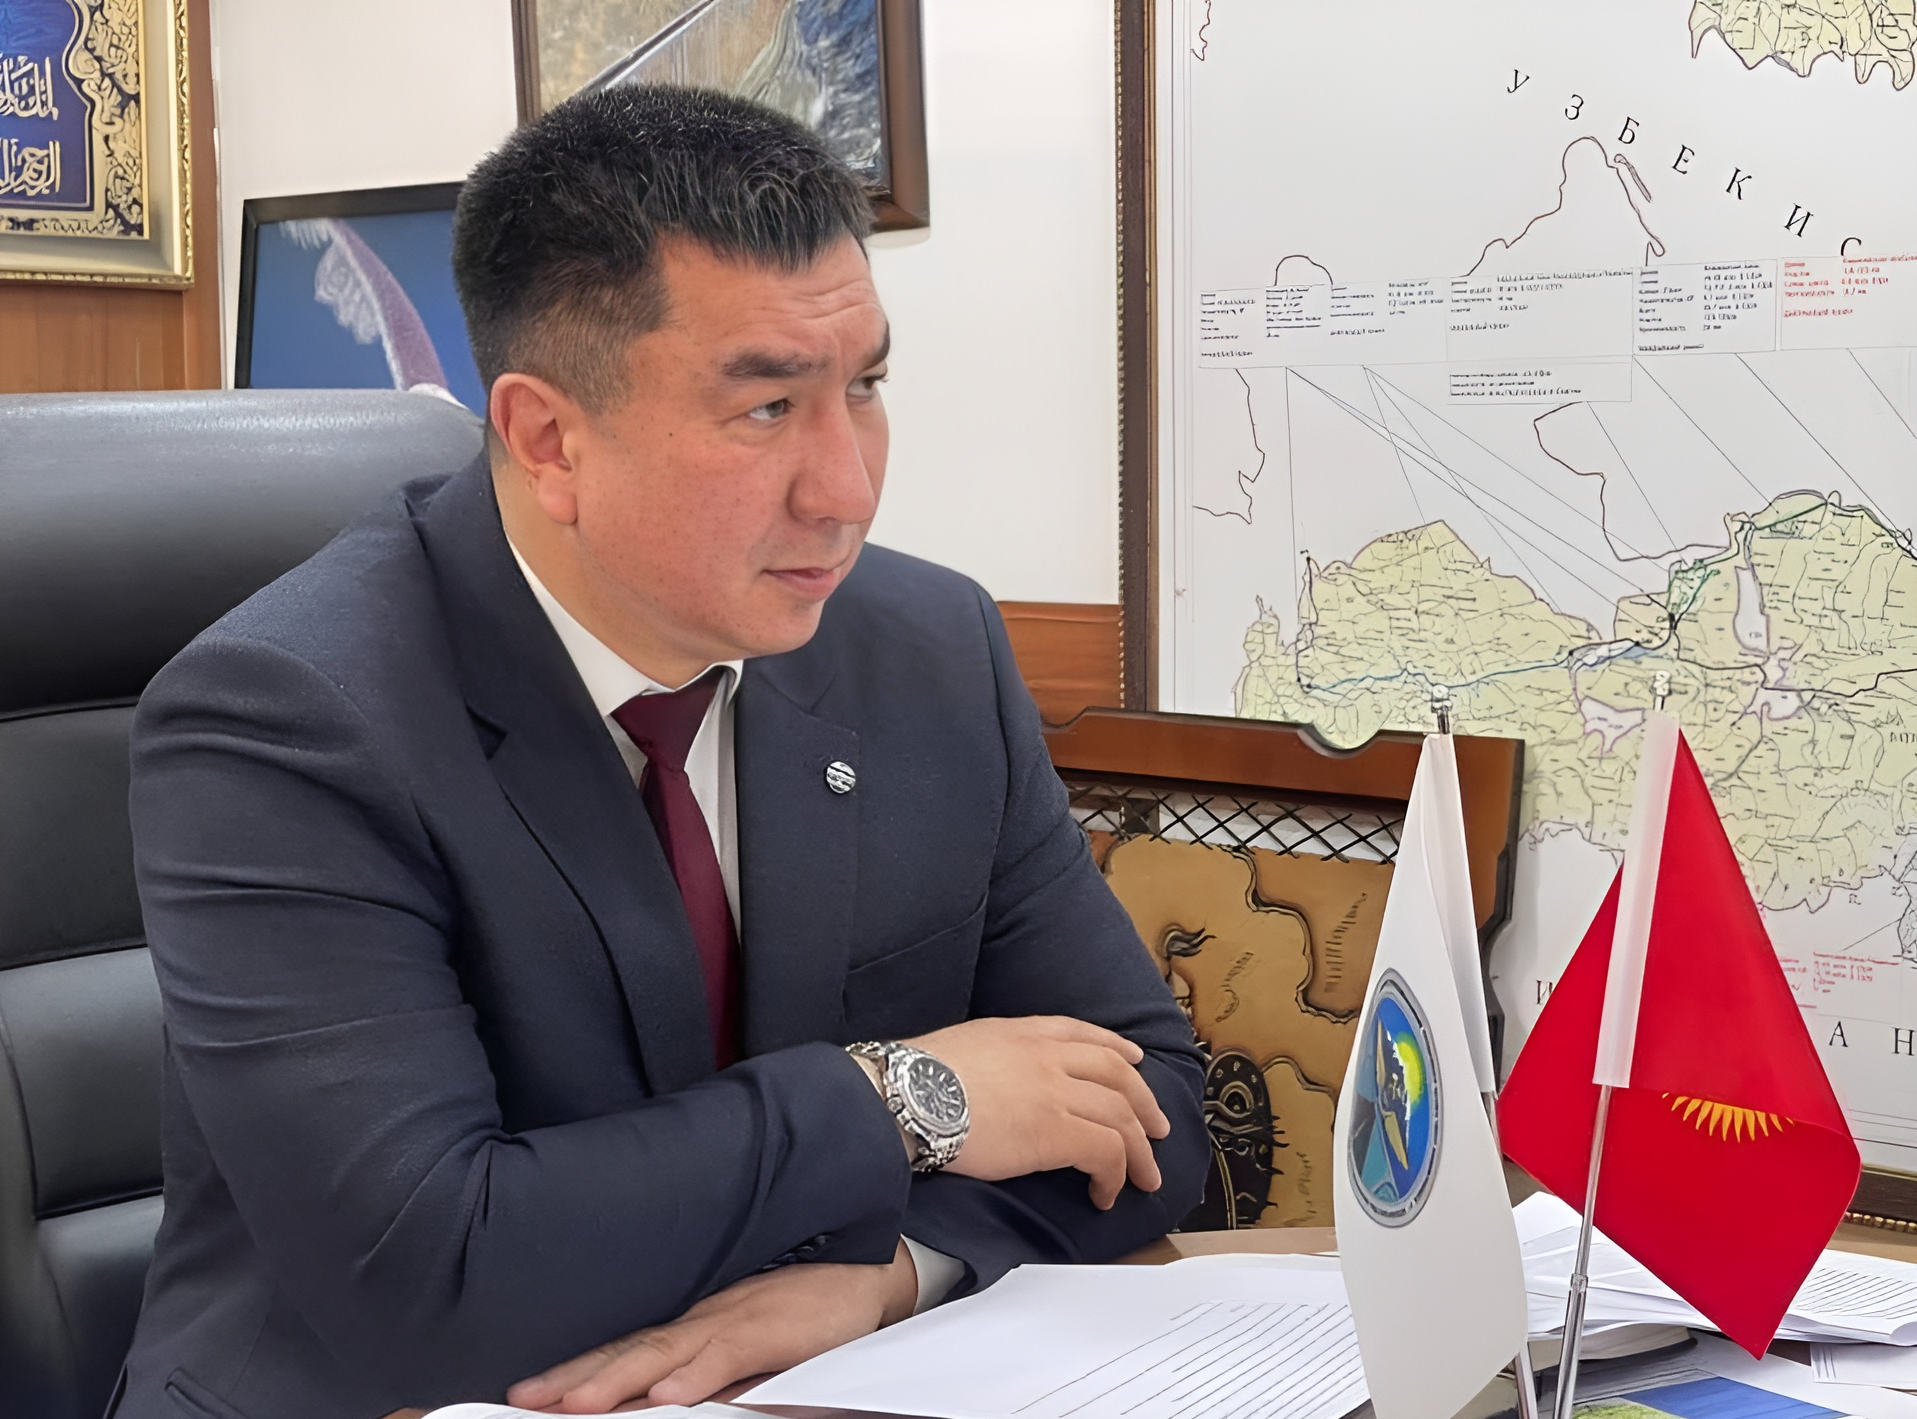 Все самое важное о крупнейших транспортных проектах Кыргызстана 
— эксклюзивное интервью с министром Тилеком Текебаевым